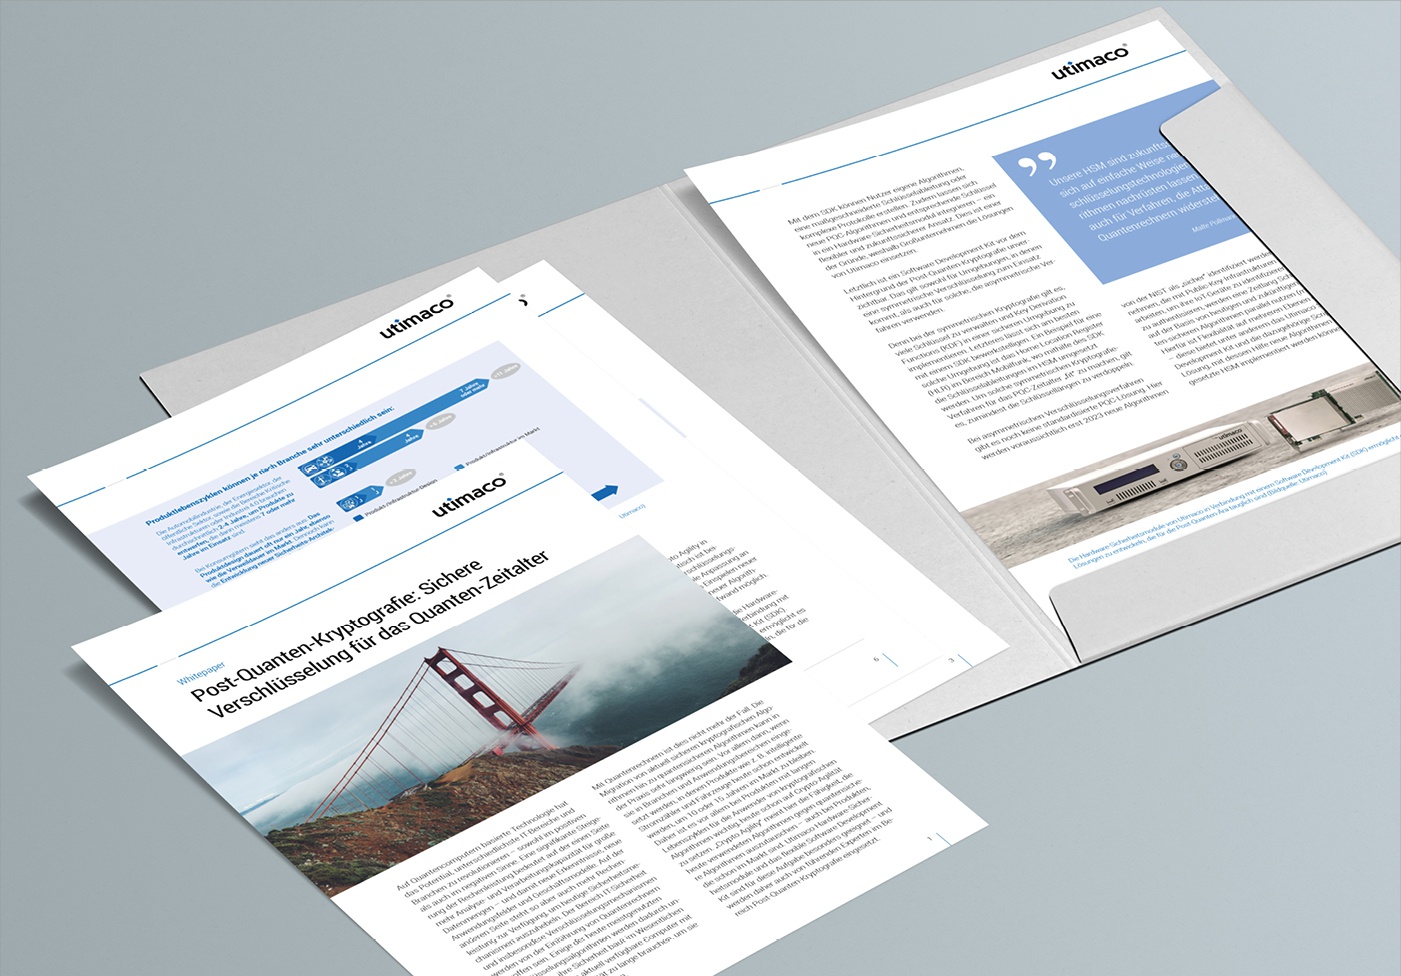 Utimaco: Whitepaper – Layoutkonzept, Umsetzung Grafikdesign, inkl. Template und Wordvorlagen